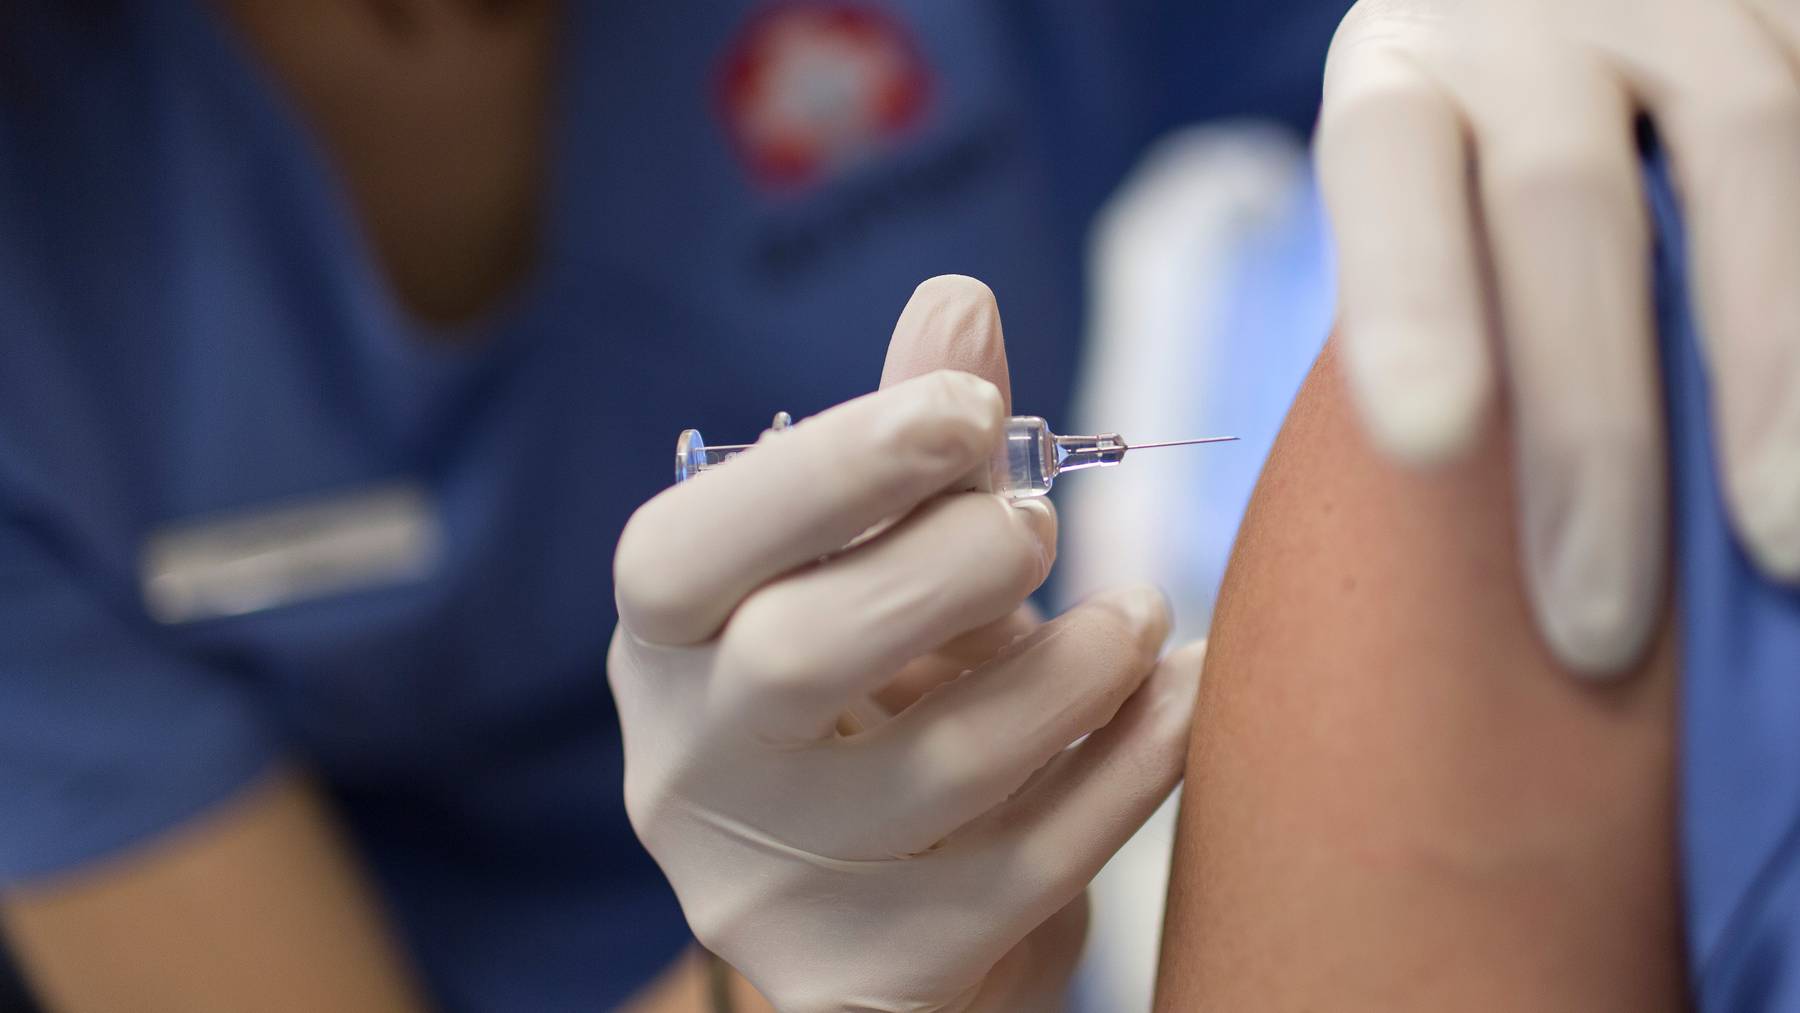 Hilft Leben schützen: Impfen. – Ist aber nicht unbestritten. (Symbolbild)